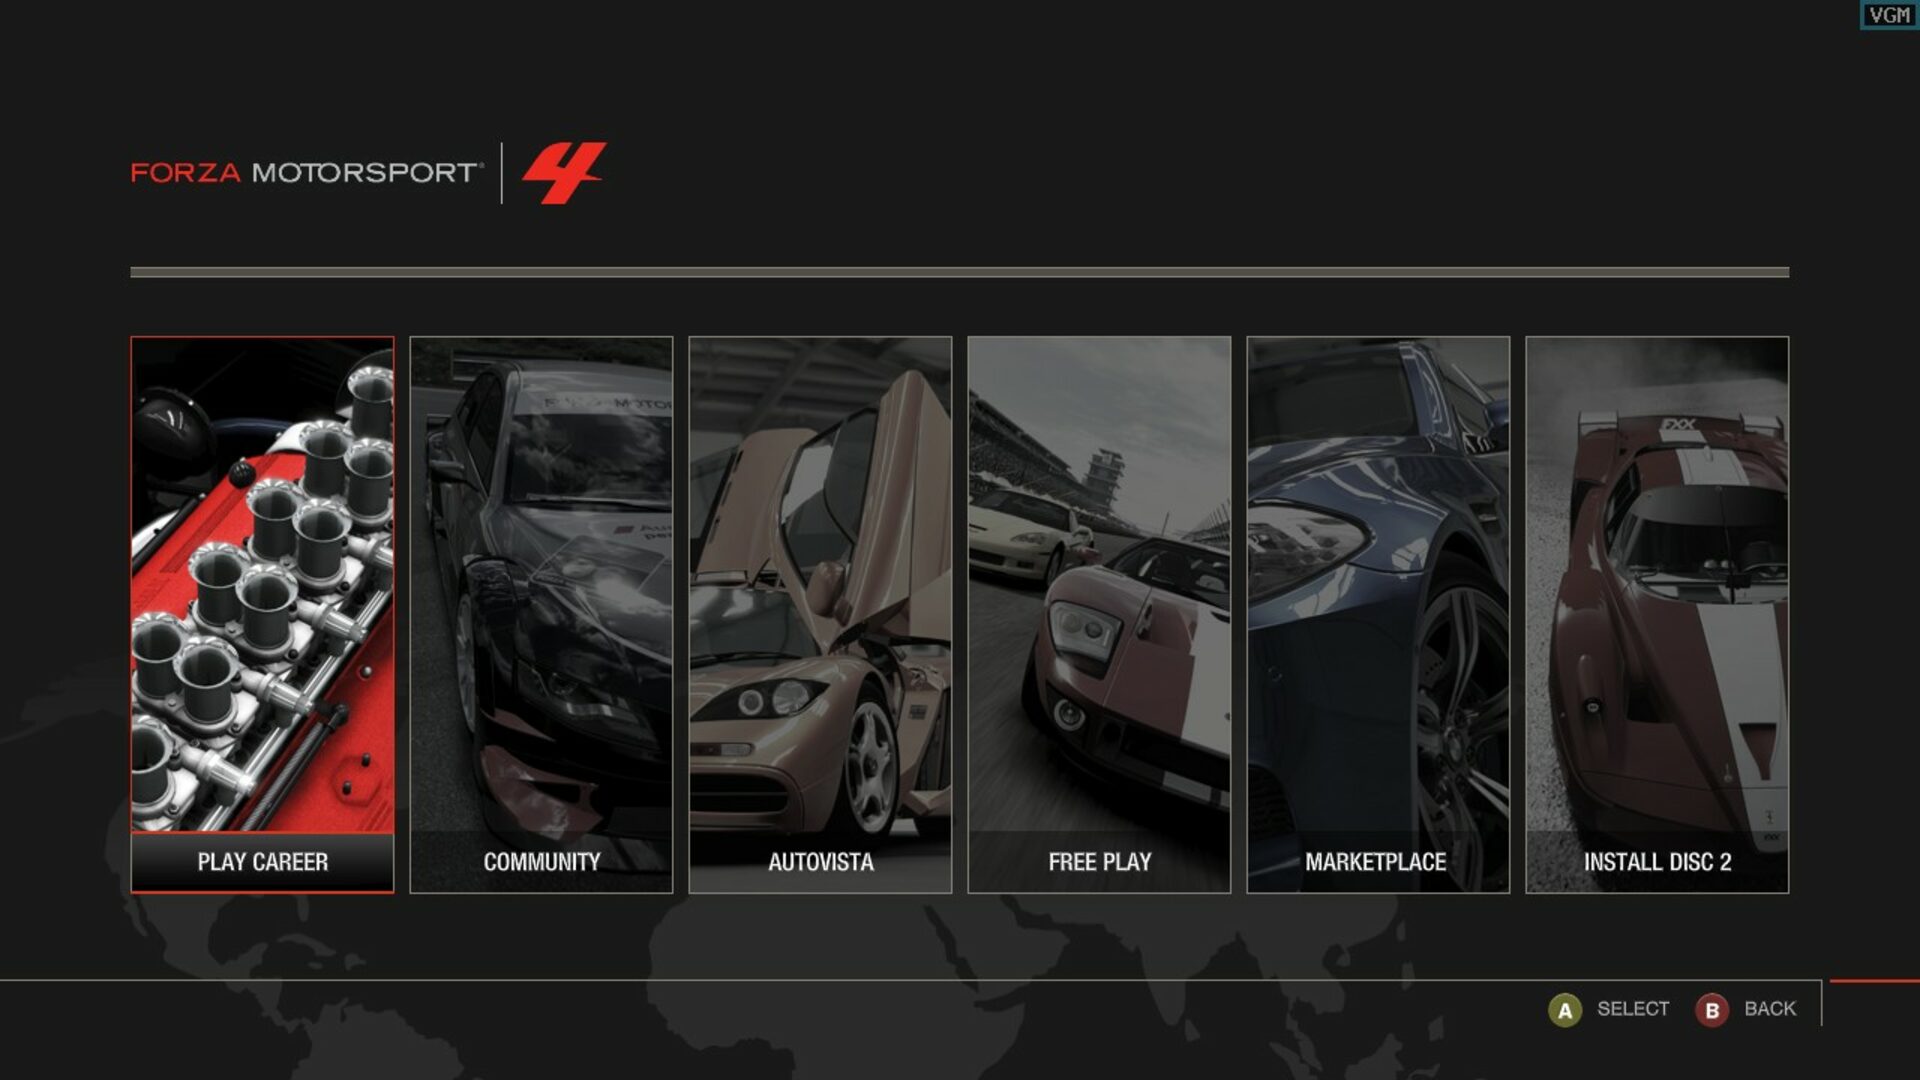 Forza motorsport 4 Xbox 360 original em mídia física - Desconto no